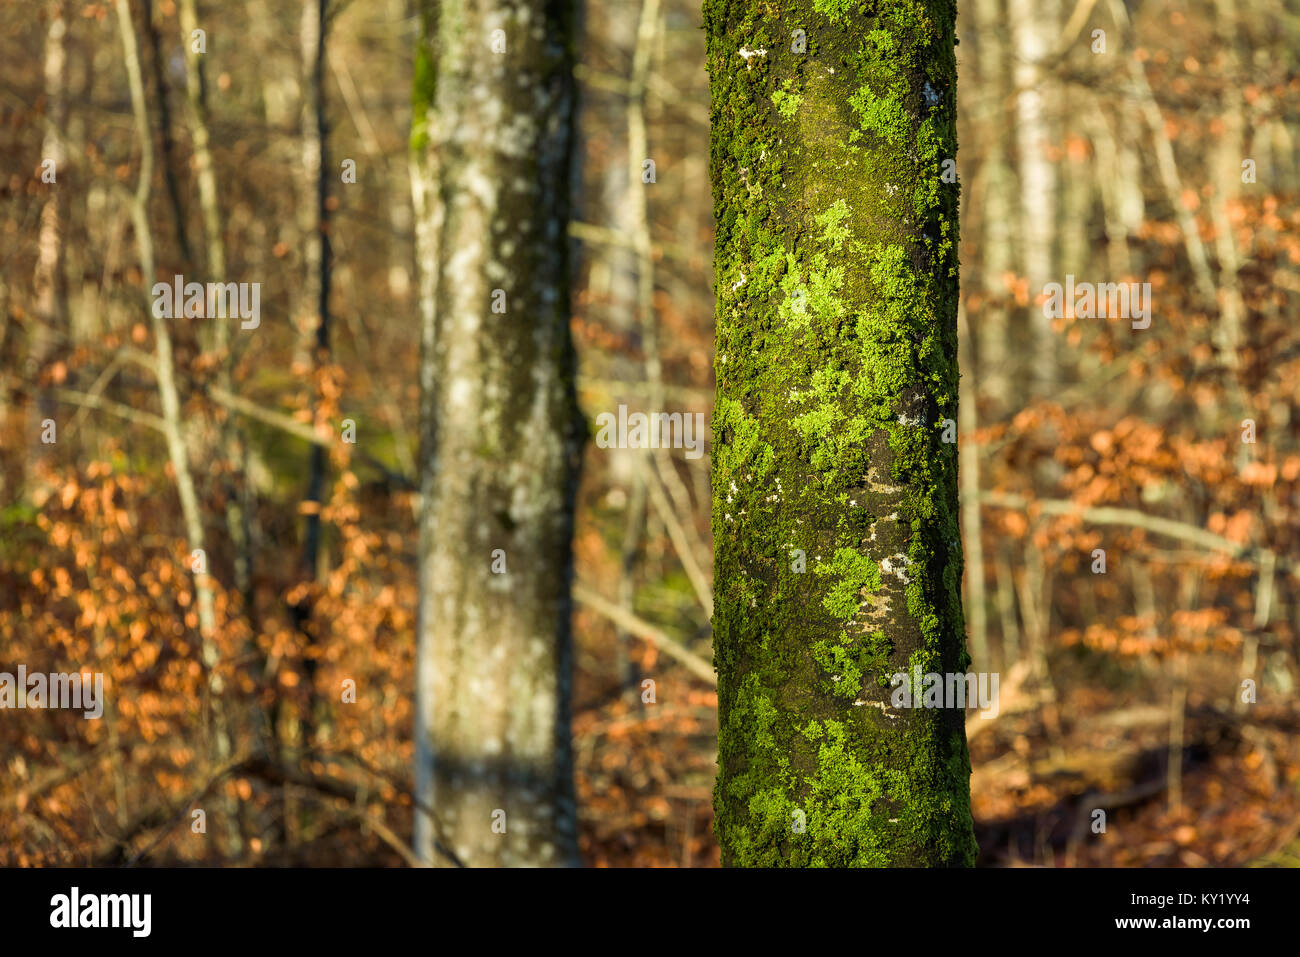 Grünen Flechten und Moos Cover eine Beech Tree Trunk. Bäume im Hintergrund fehlen den grünen Flechten. Stockfoto